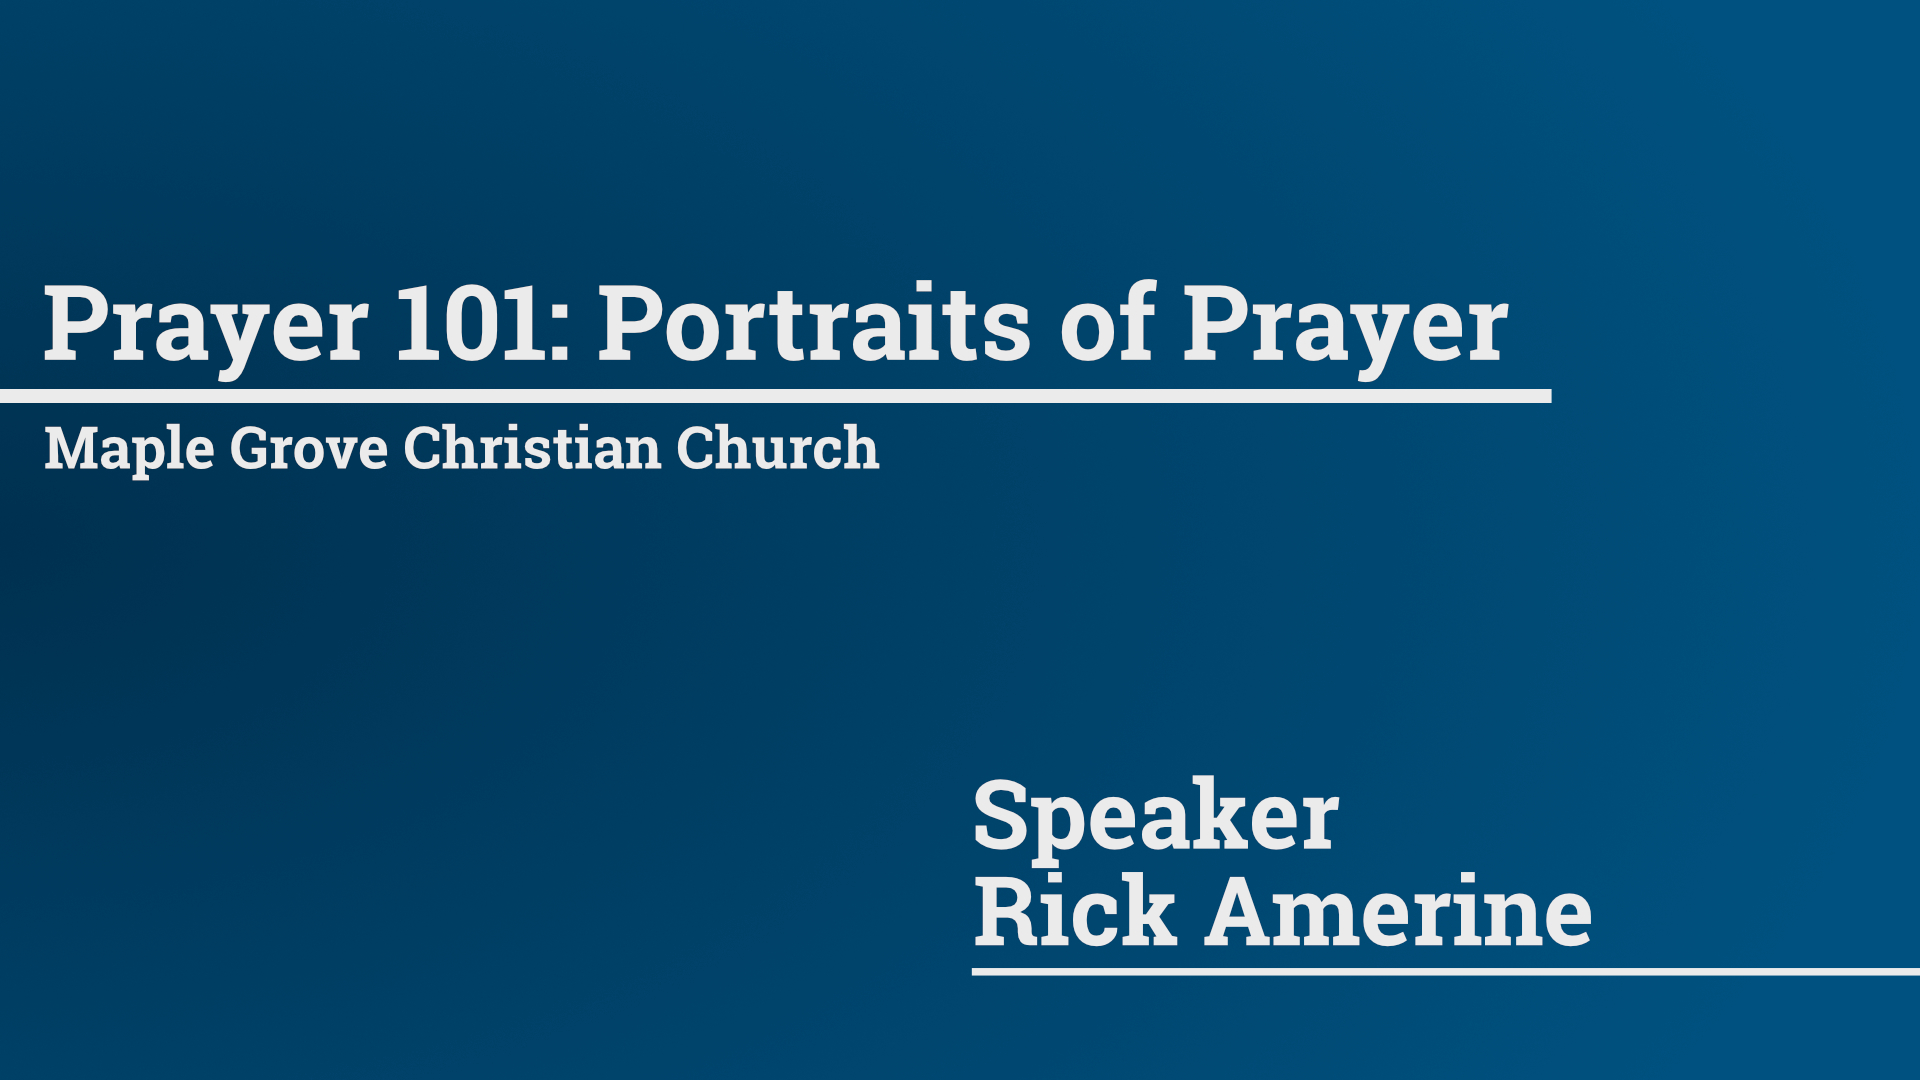 Prayer 101: Portraits of Prayer • Feb. 7, 2016